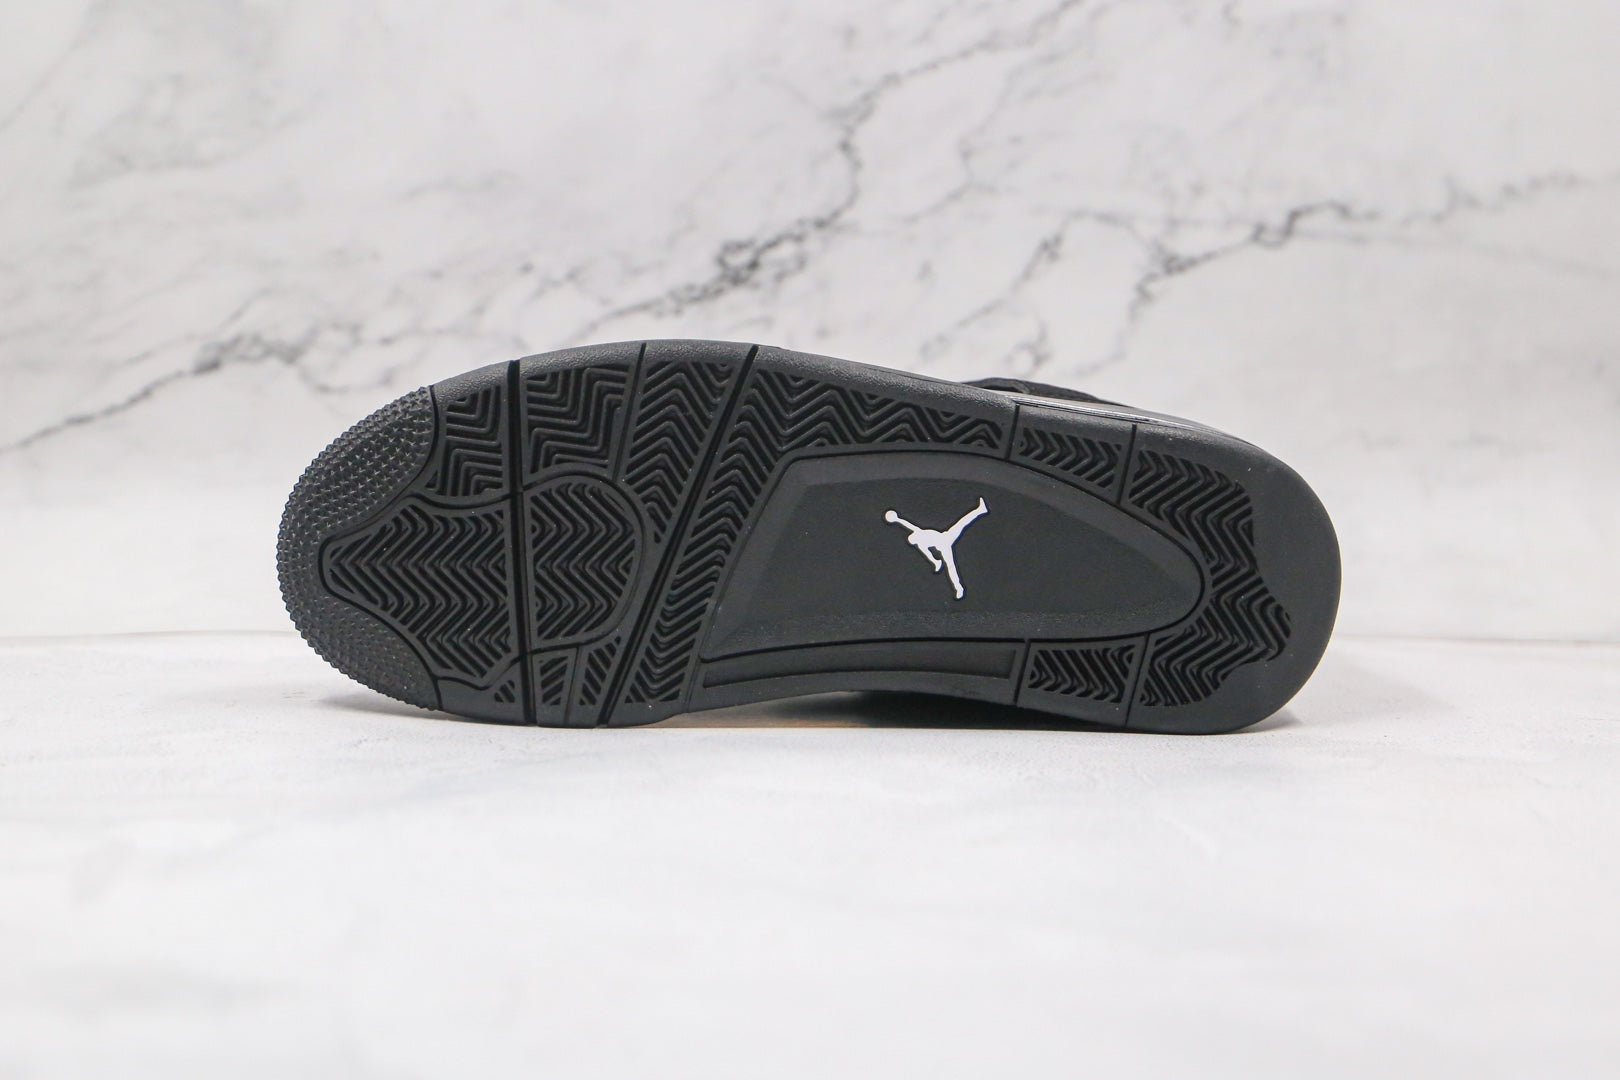 i8 Batch-Air Jordan 4 “Black Cat”